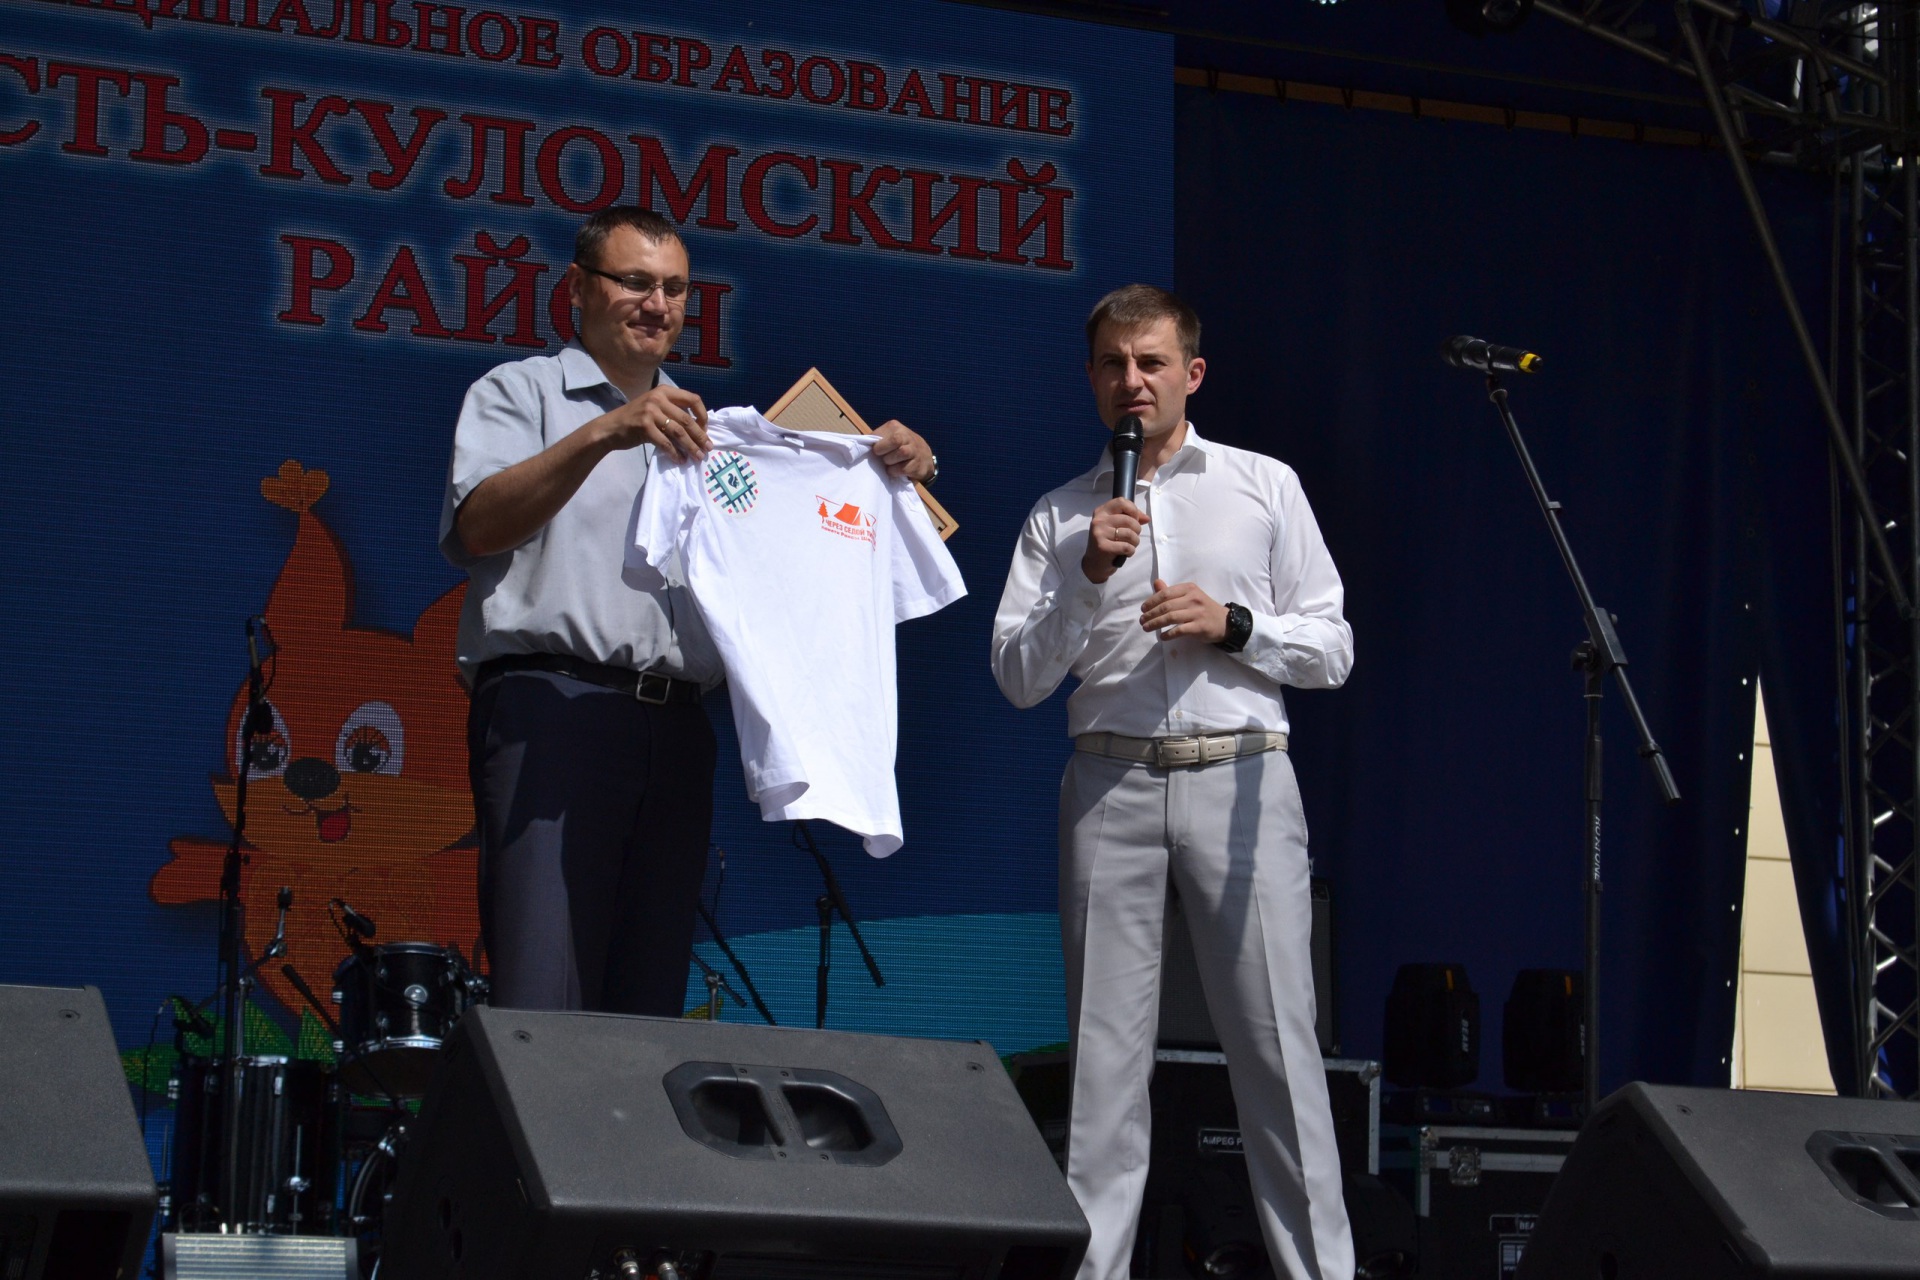 Організатори та учасники присвятили його загиблої активістці Усть-Куломського земляцтва Раїсі Шаховий